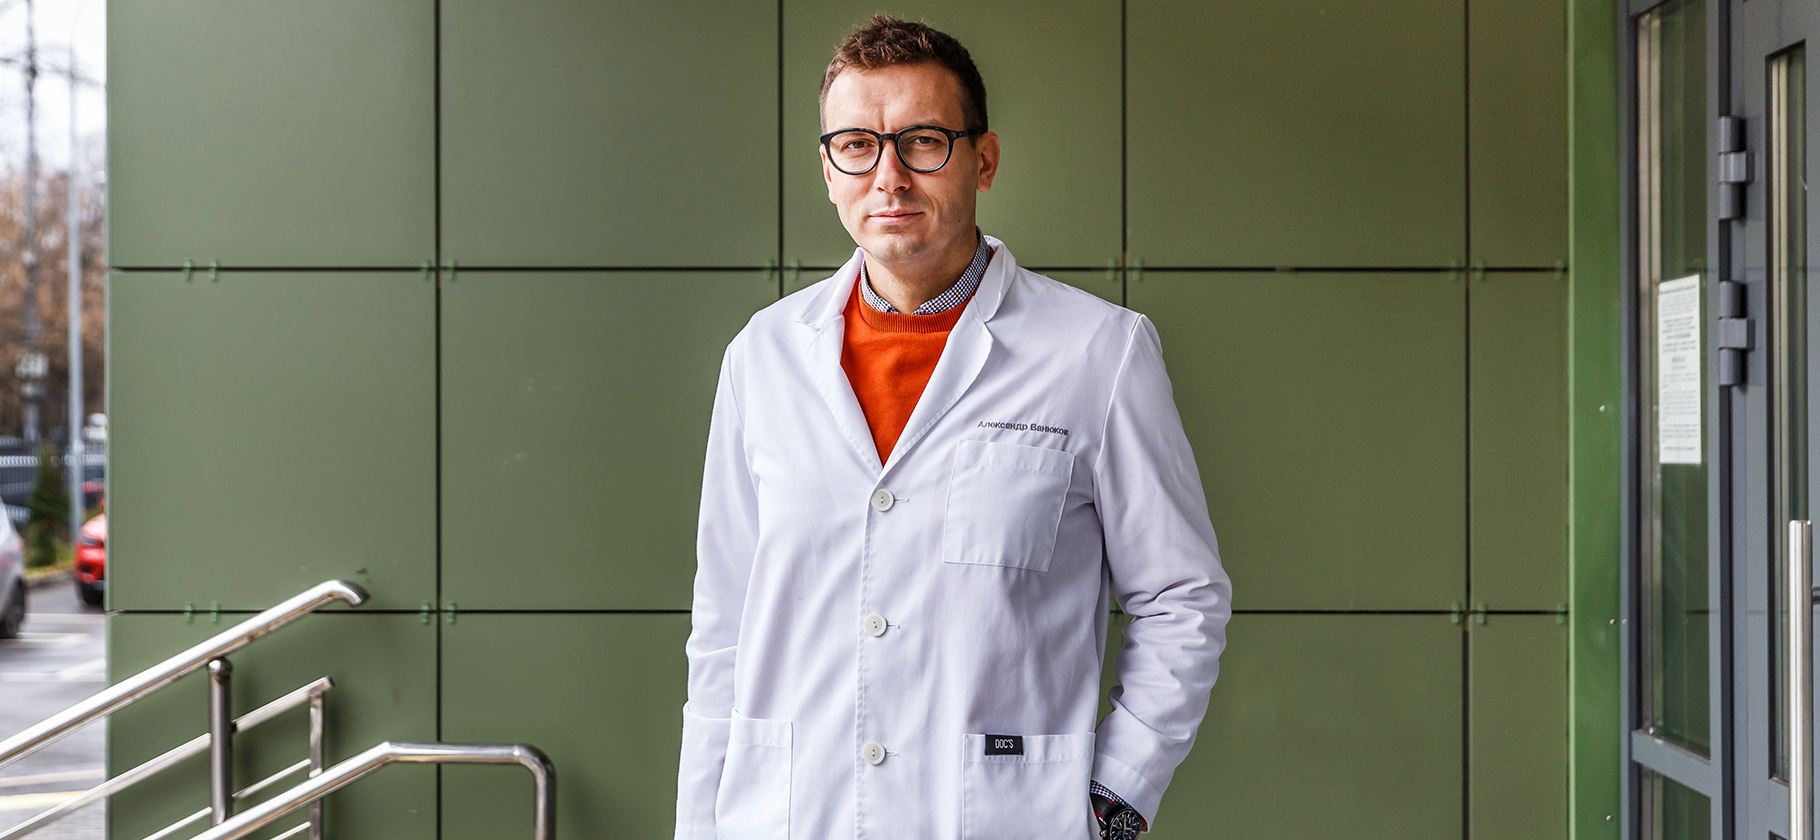 16 важных вопросов о коронавирусе врачу красной зоны Александру Ванюкову